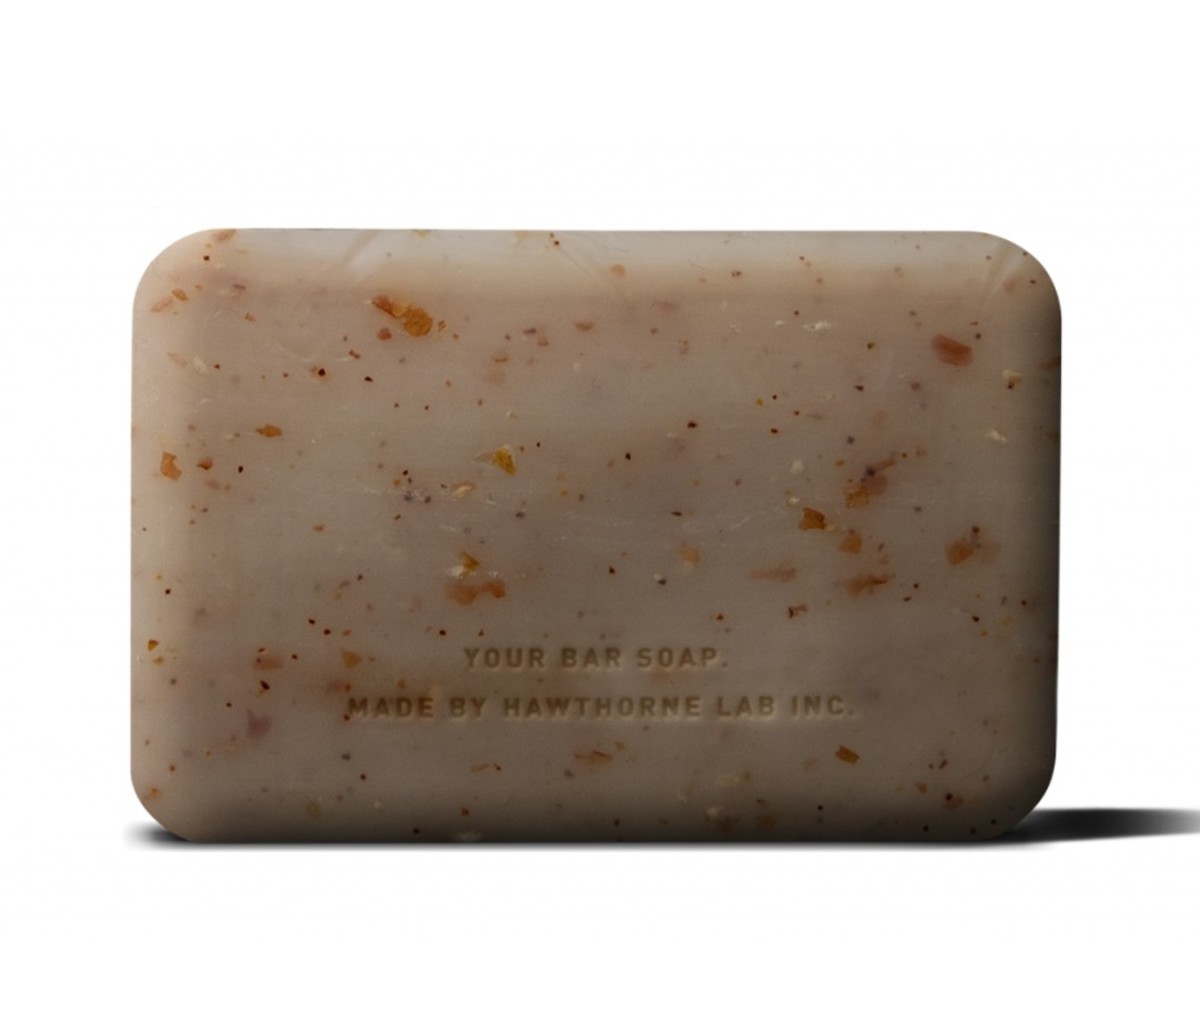 Hawthorne Exfoliating Bar Soap